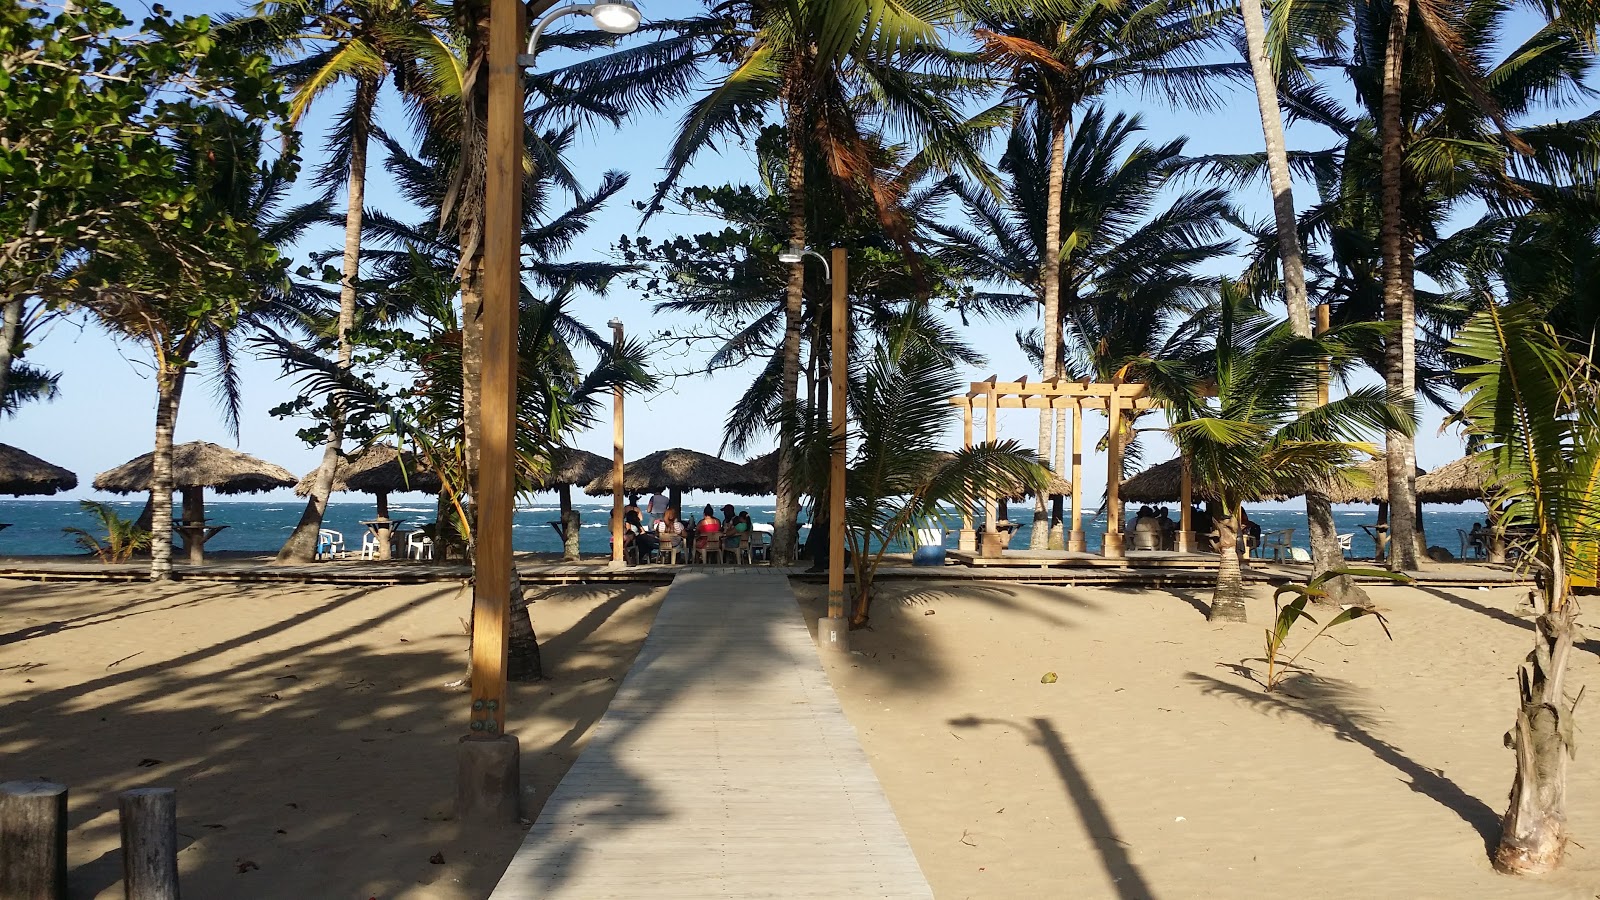 Fotografie cu Playa Poza de Bojolo - locul popular printre cunoscătorii de relaxare